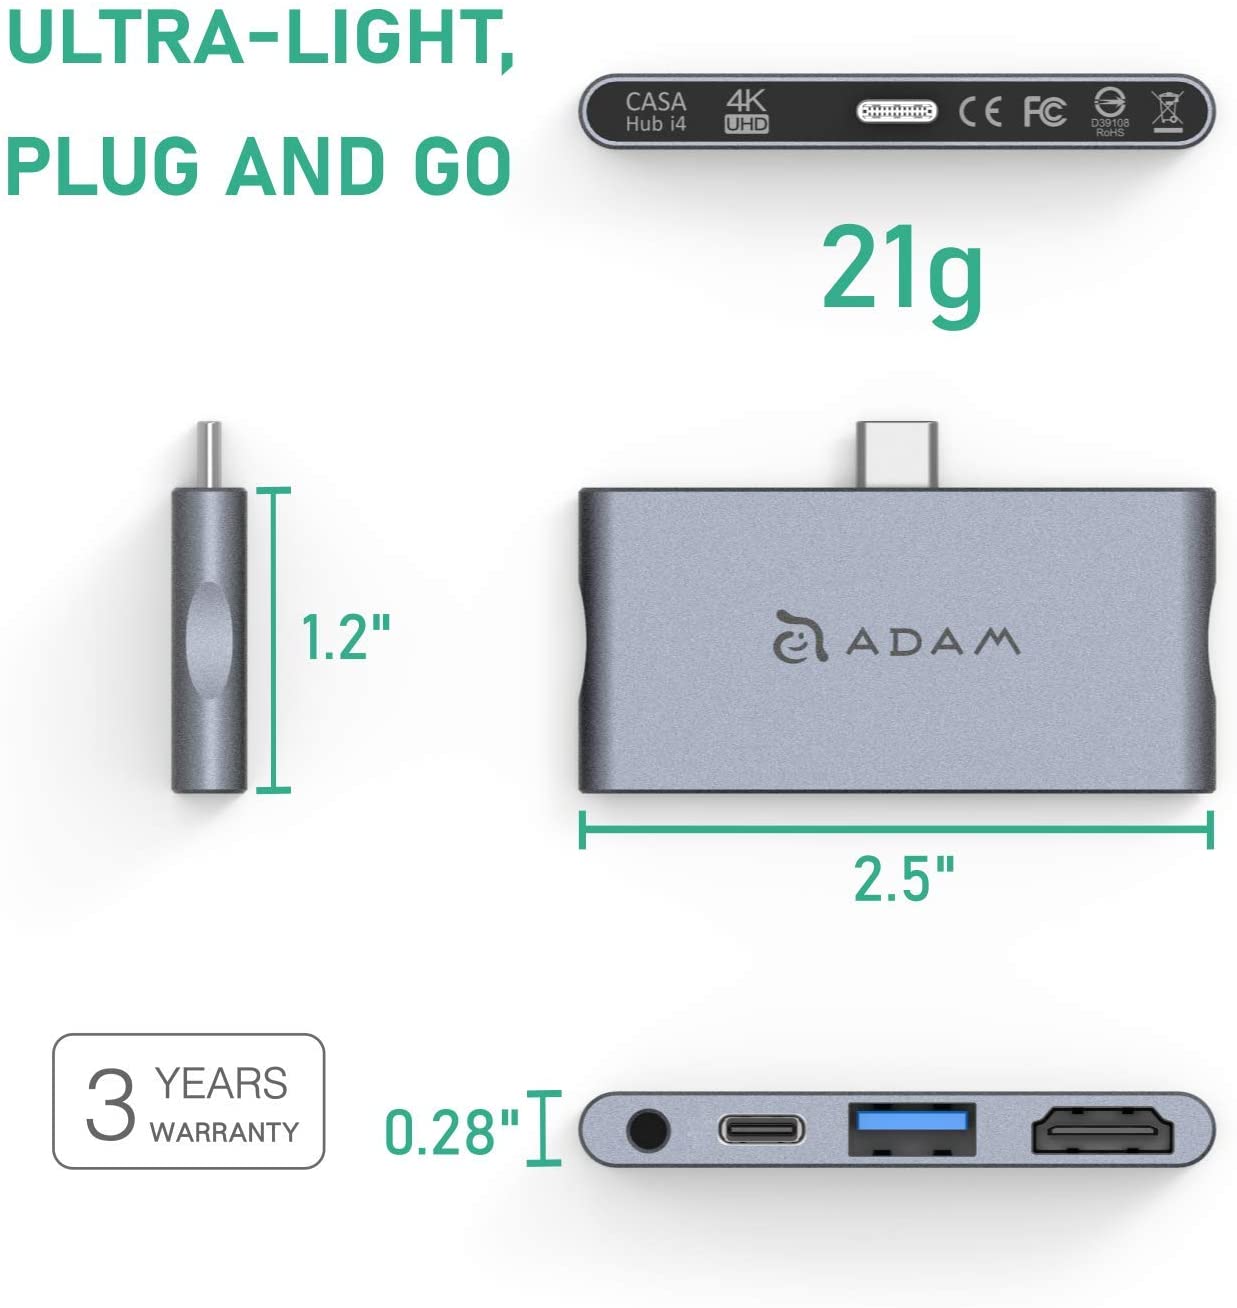 Adam Casa Hub i4 USB-C 3.1 4 in 1 Port Hub for iPad Pro